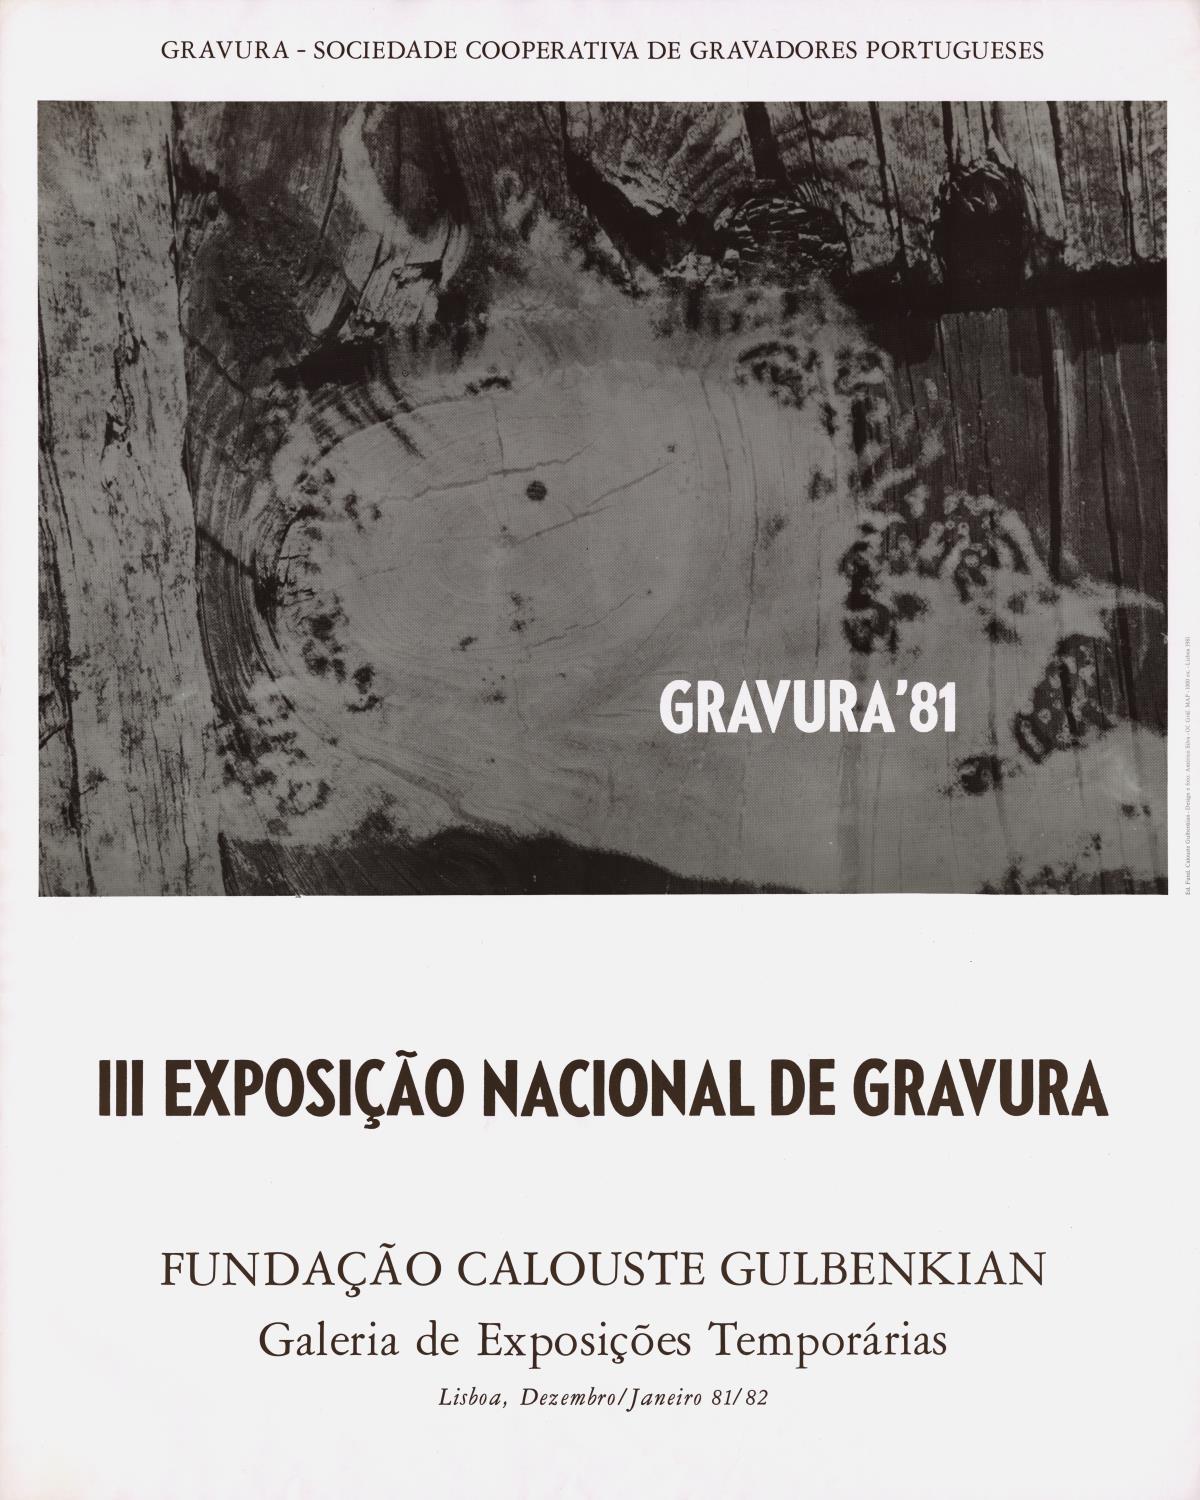 III Exposição Nacional de Gravura. Gravura 81